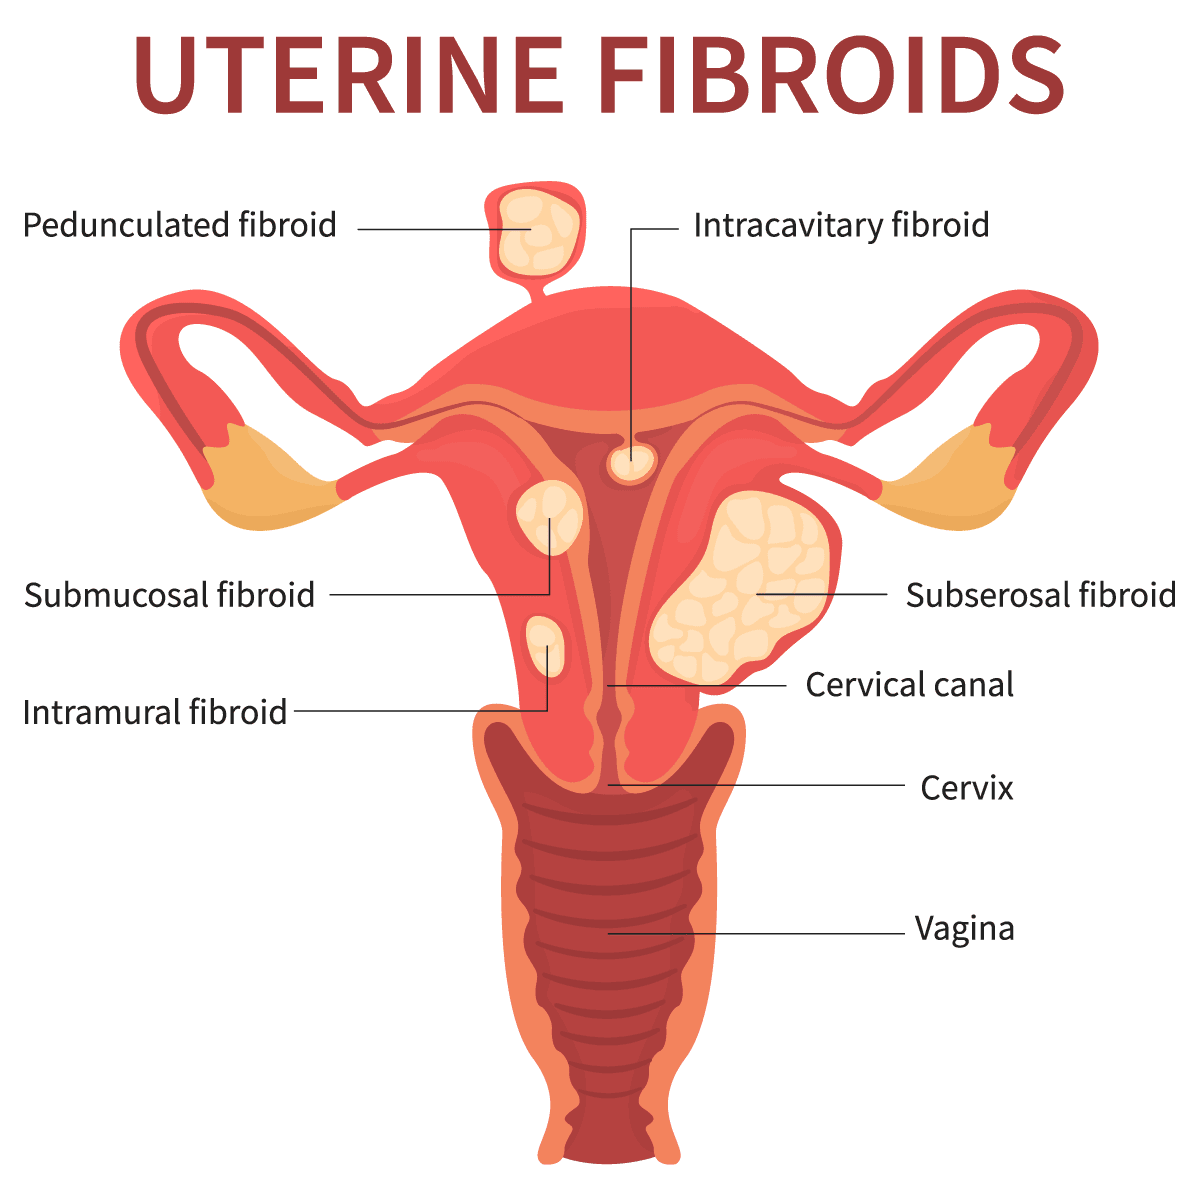 Treating Uterine Fibroid Embolization Ufe Without Surgery